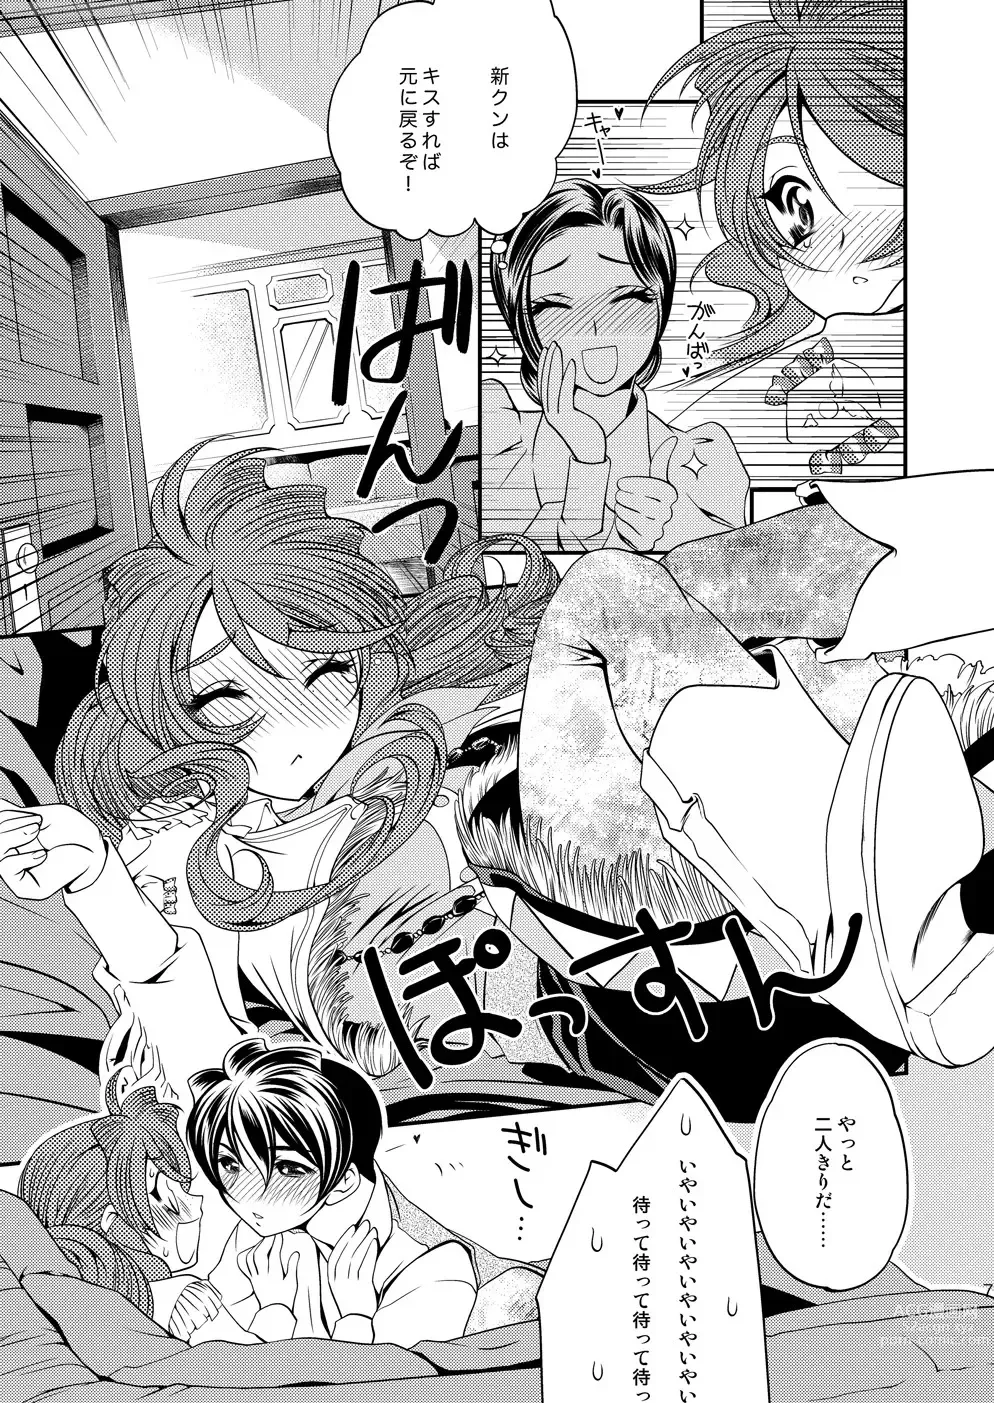 Page 6 of doujinshi Maru Maru Mori Mori na Okusuri no Sei de Gemini-san ga Kiss o Nedaru